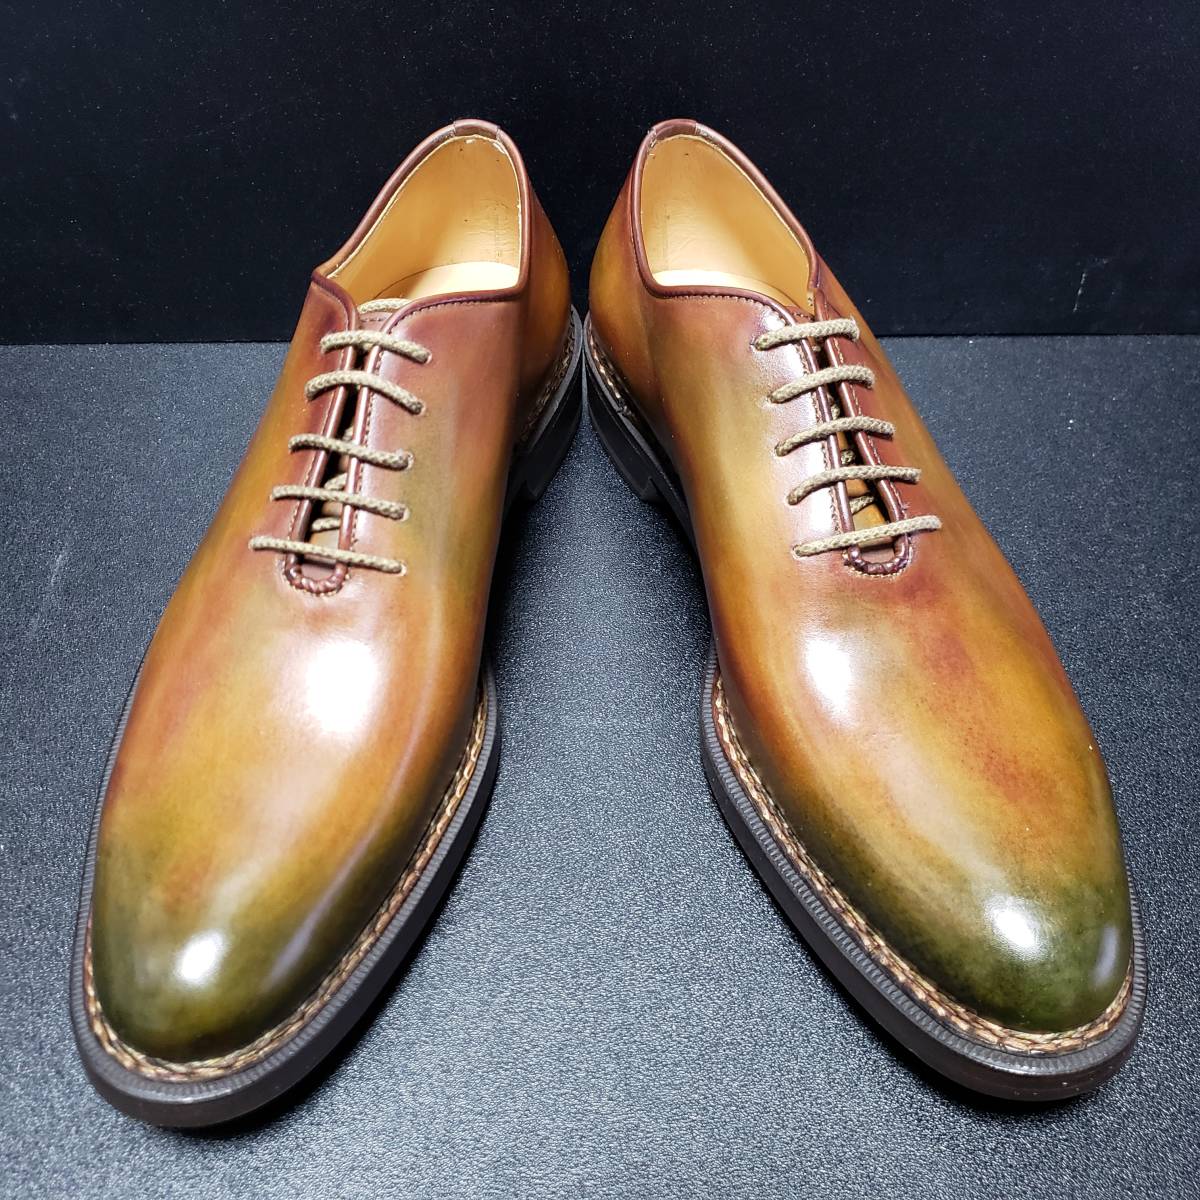 買得 フラテッリジャコメッティ(F.lli Giacometti) 革靴 US8.5 26.0cm